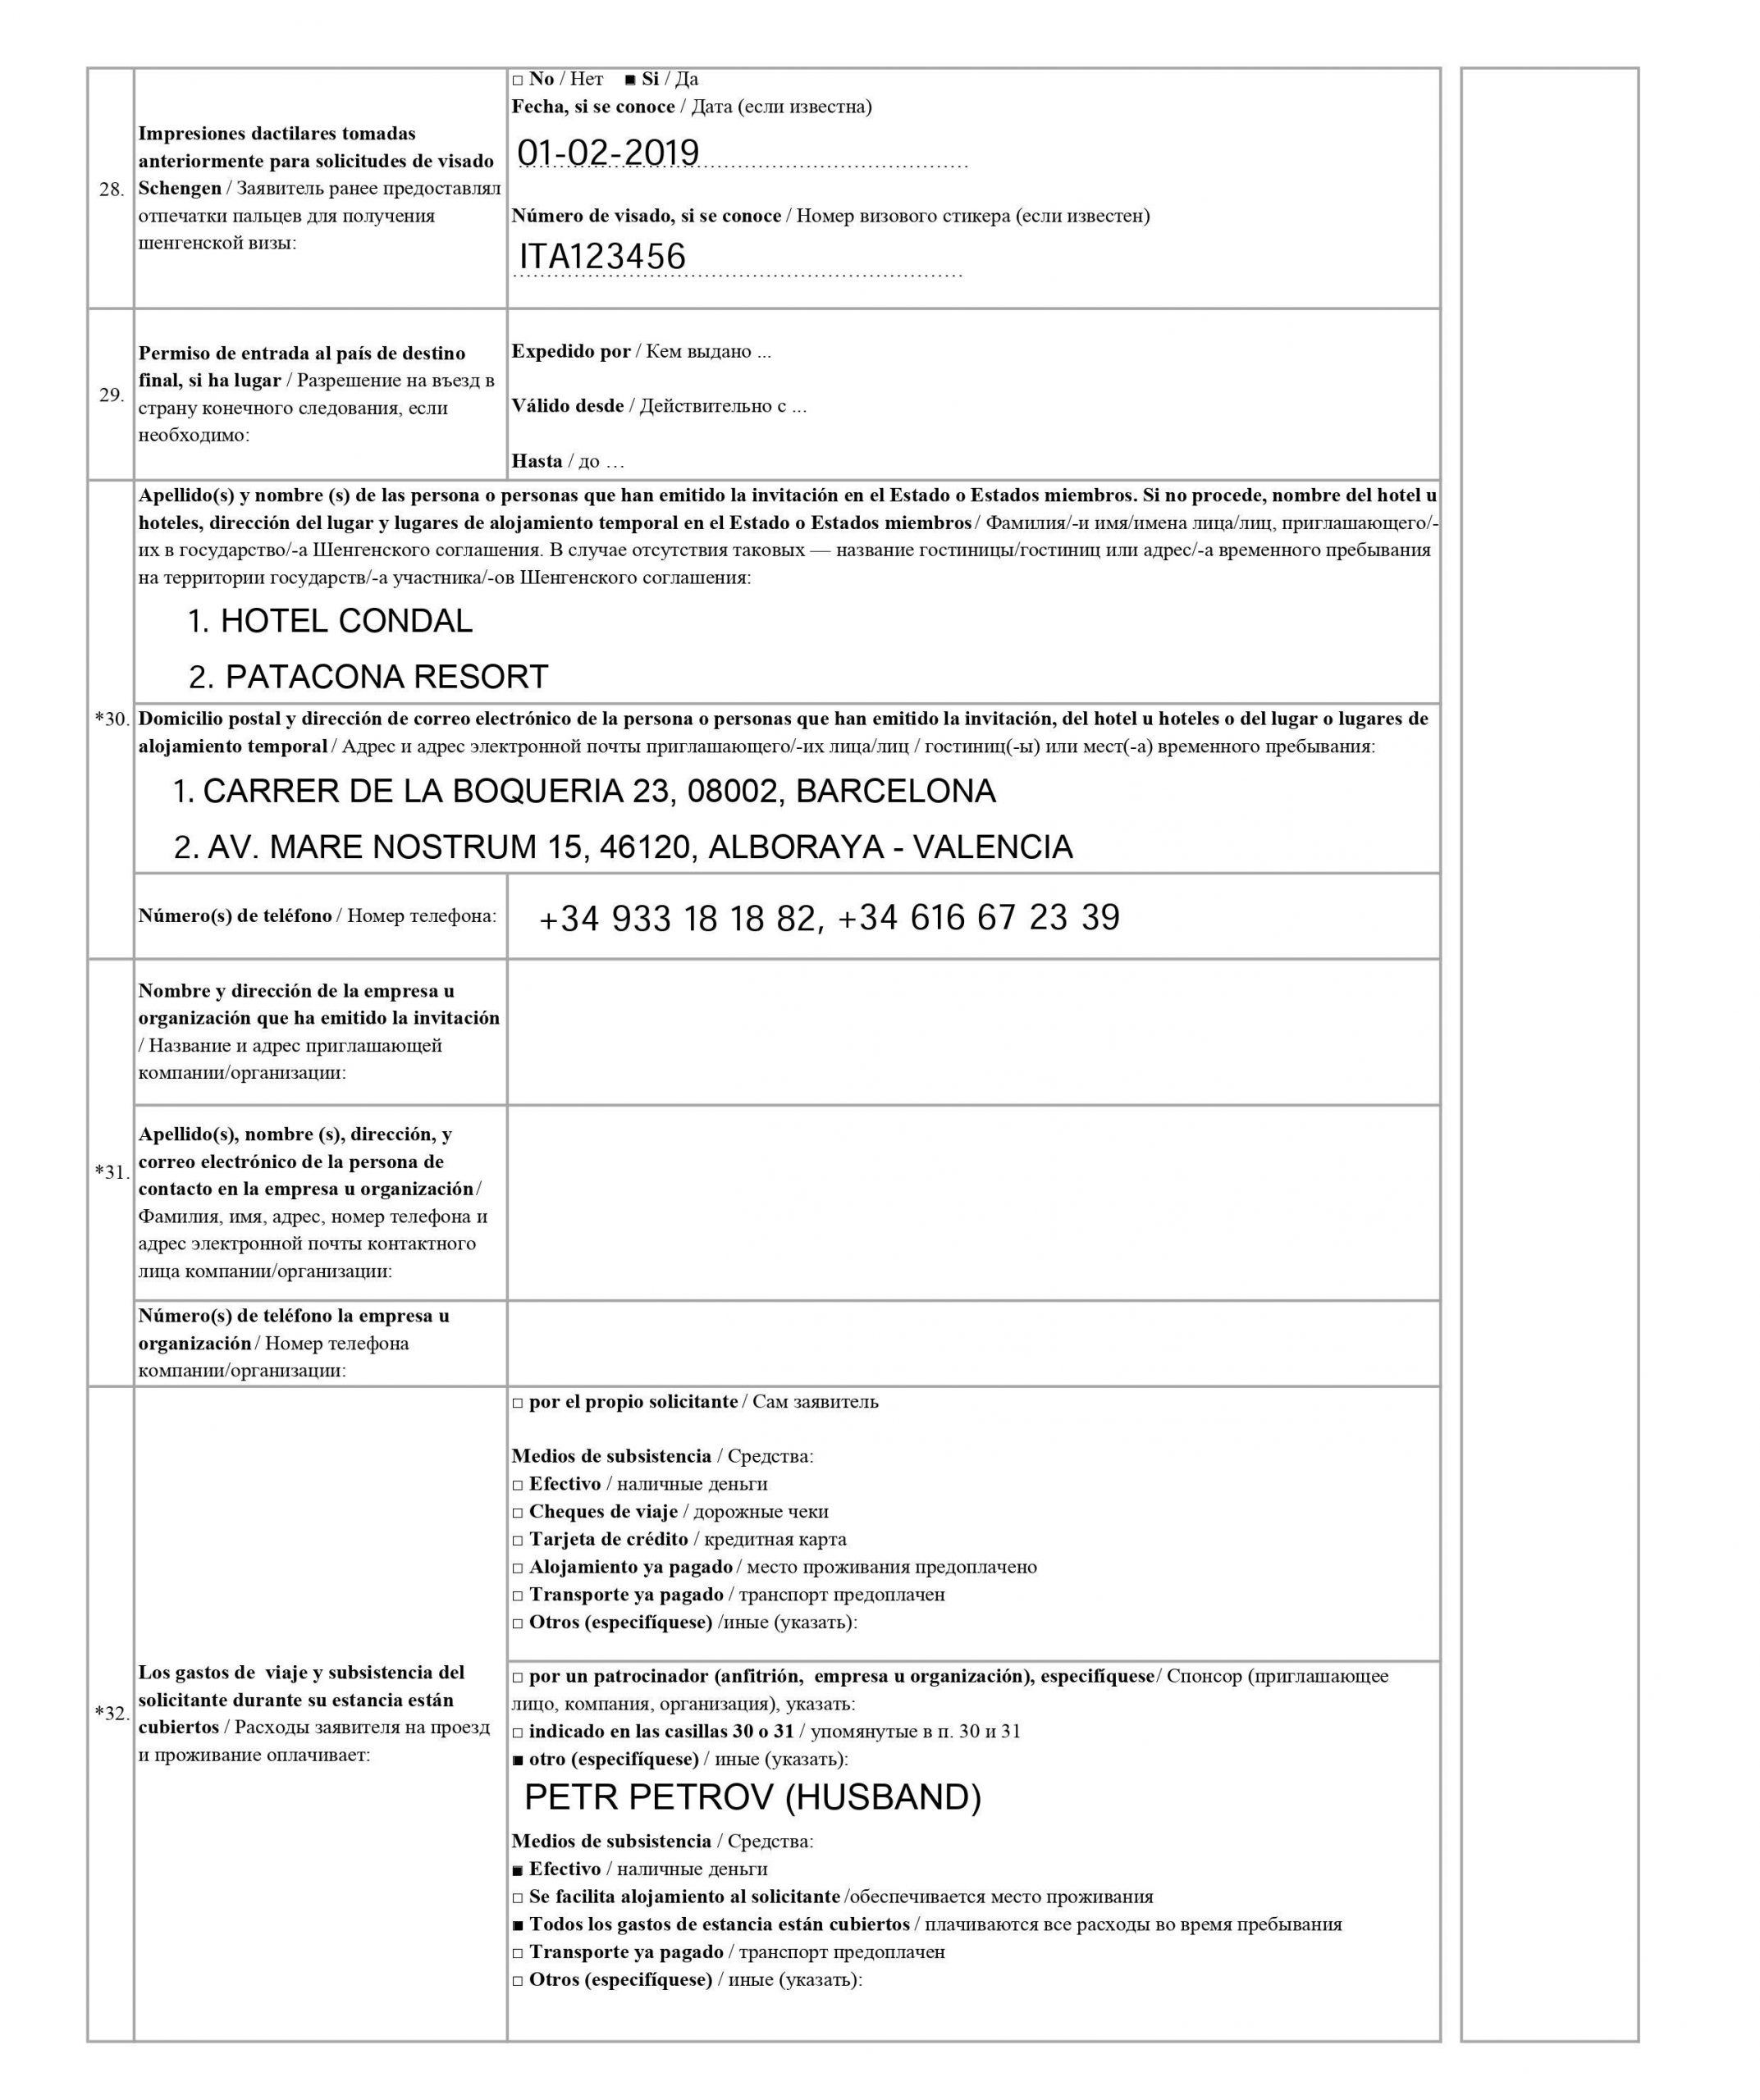 Пример заполнения анкеты на испанскую визу — пункты с 28 по 32